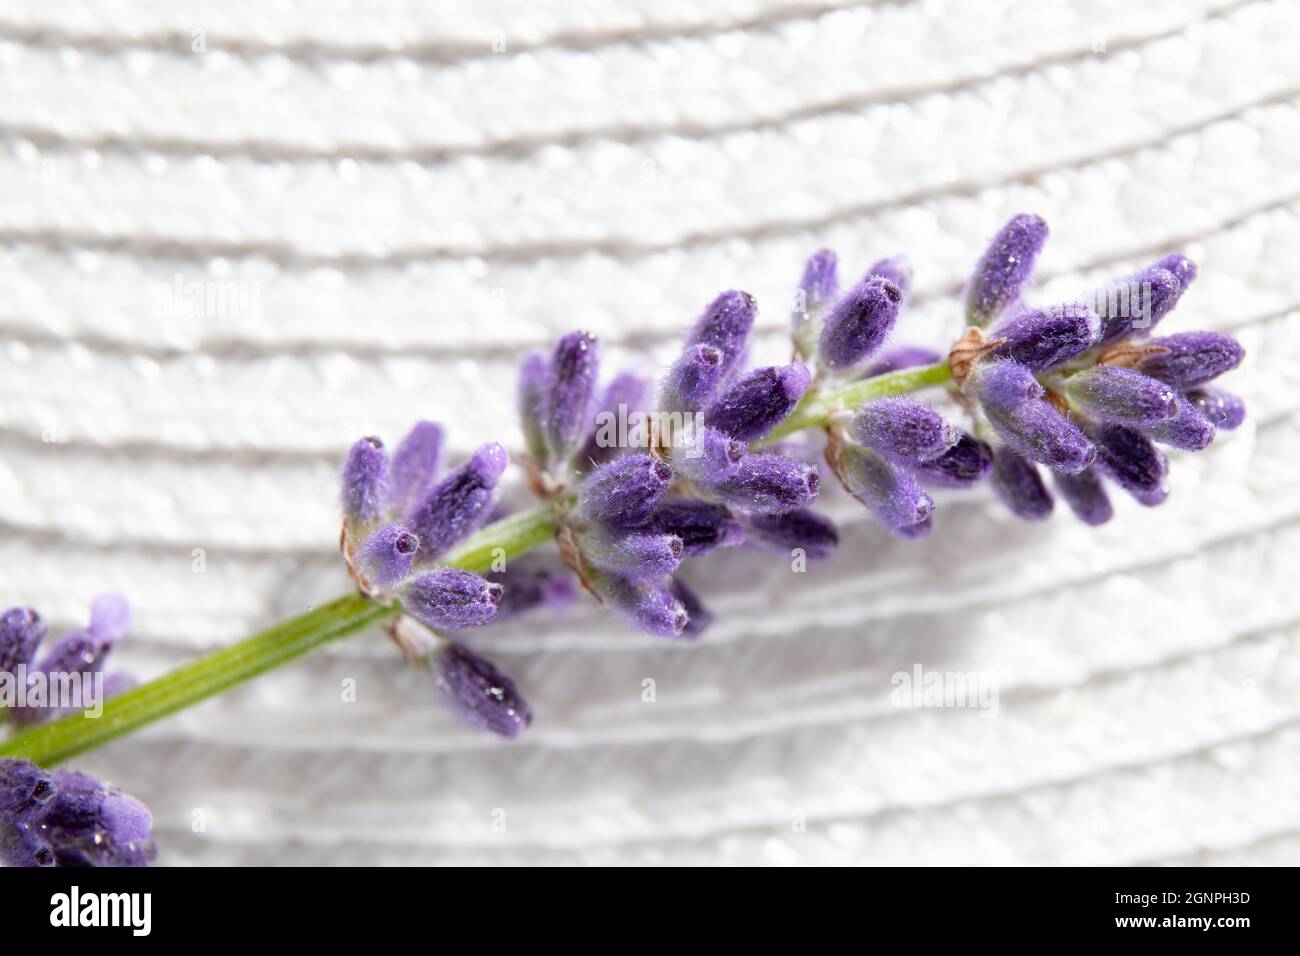 Vue rapprochée de Lavandula angustifolia également connue sous le nom de lavande commune, véritable lavande ou fleur de lavande anglaise sur fond blanc. Macro studio. Banque D'Images